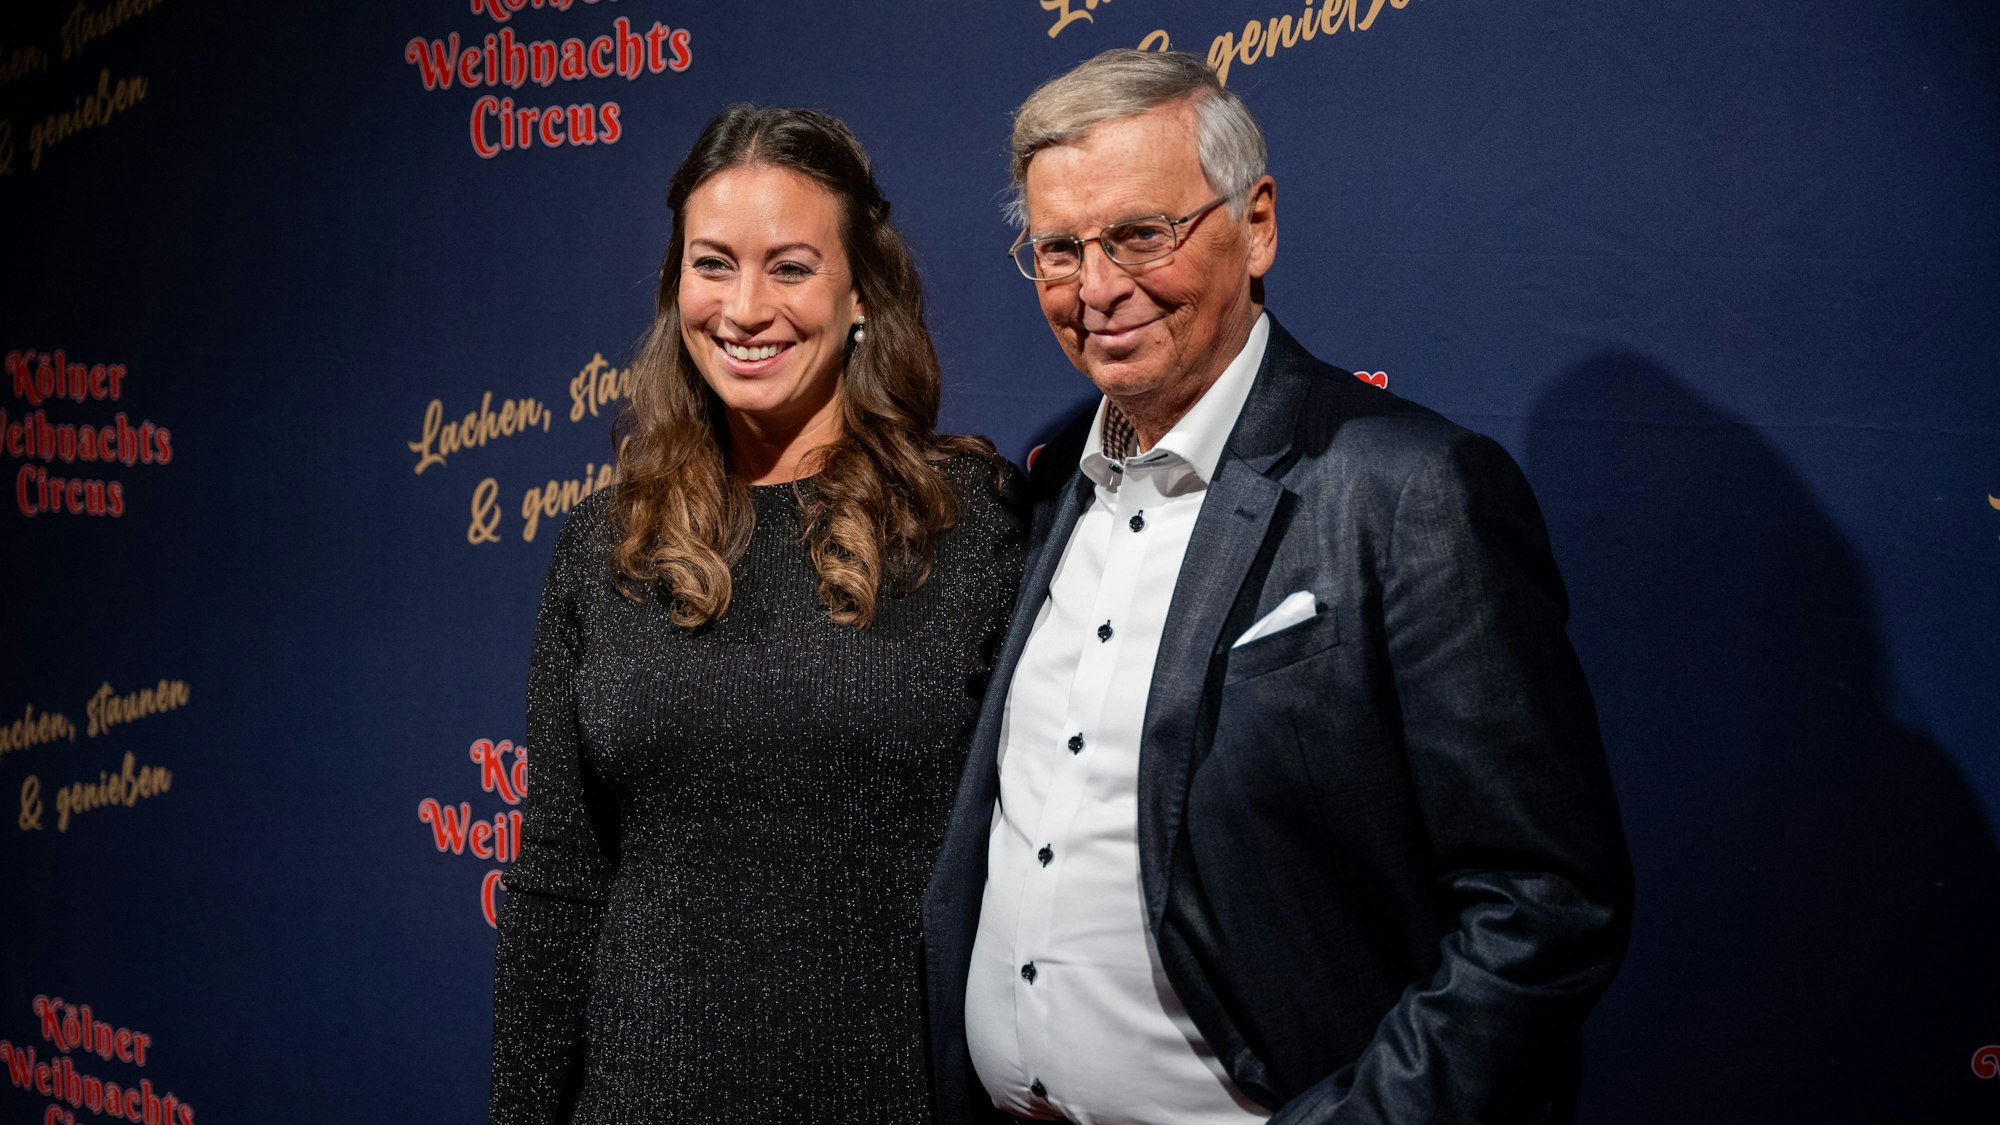 Wolfgang Bosbach und Tochter Caroline lächeln vor dem Kölner Weihnachtscircus in die Kamera.